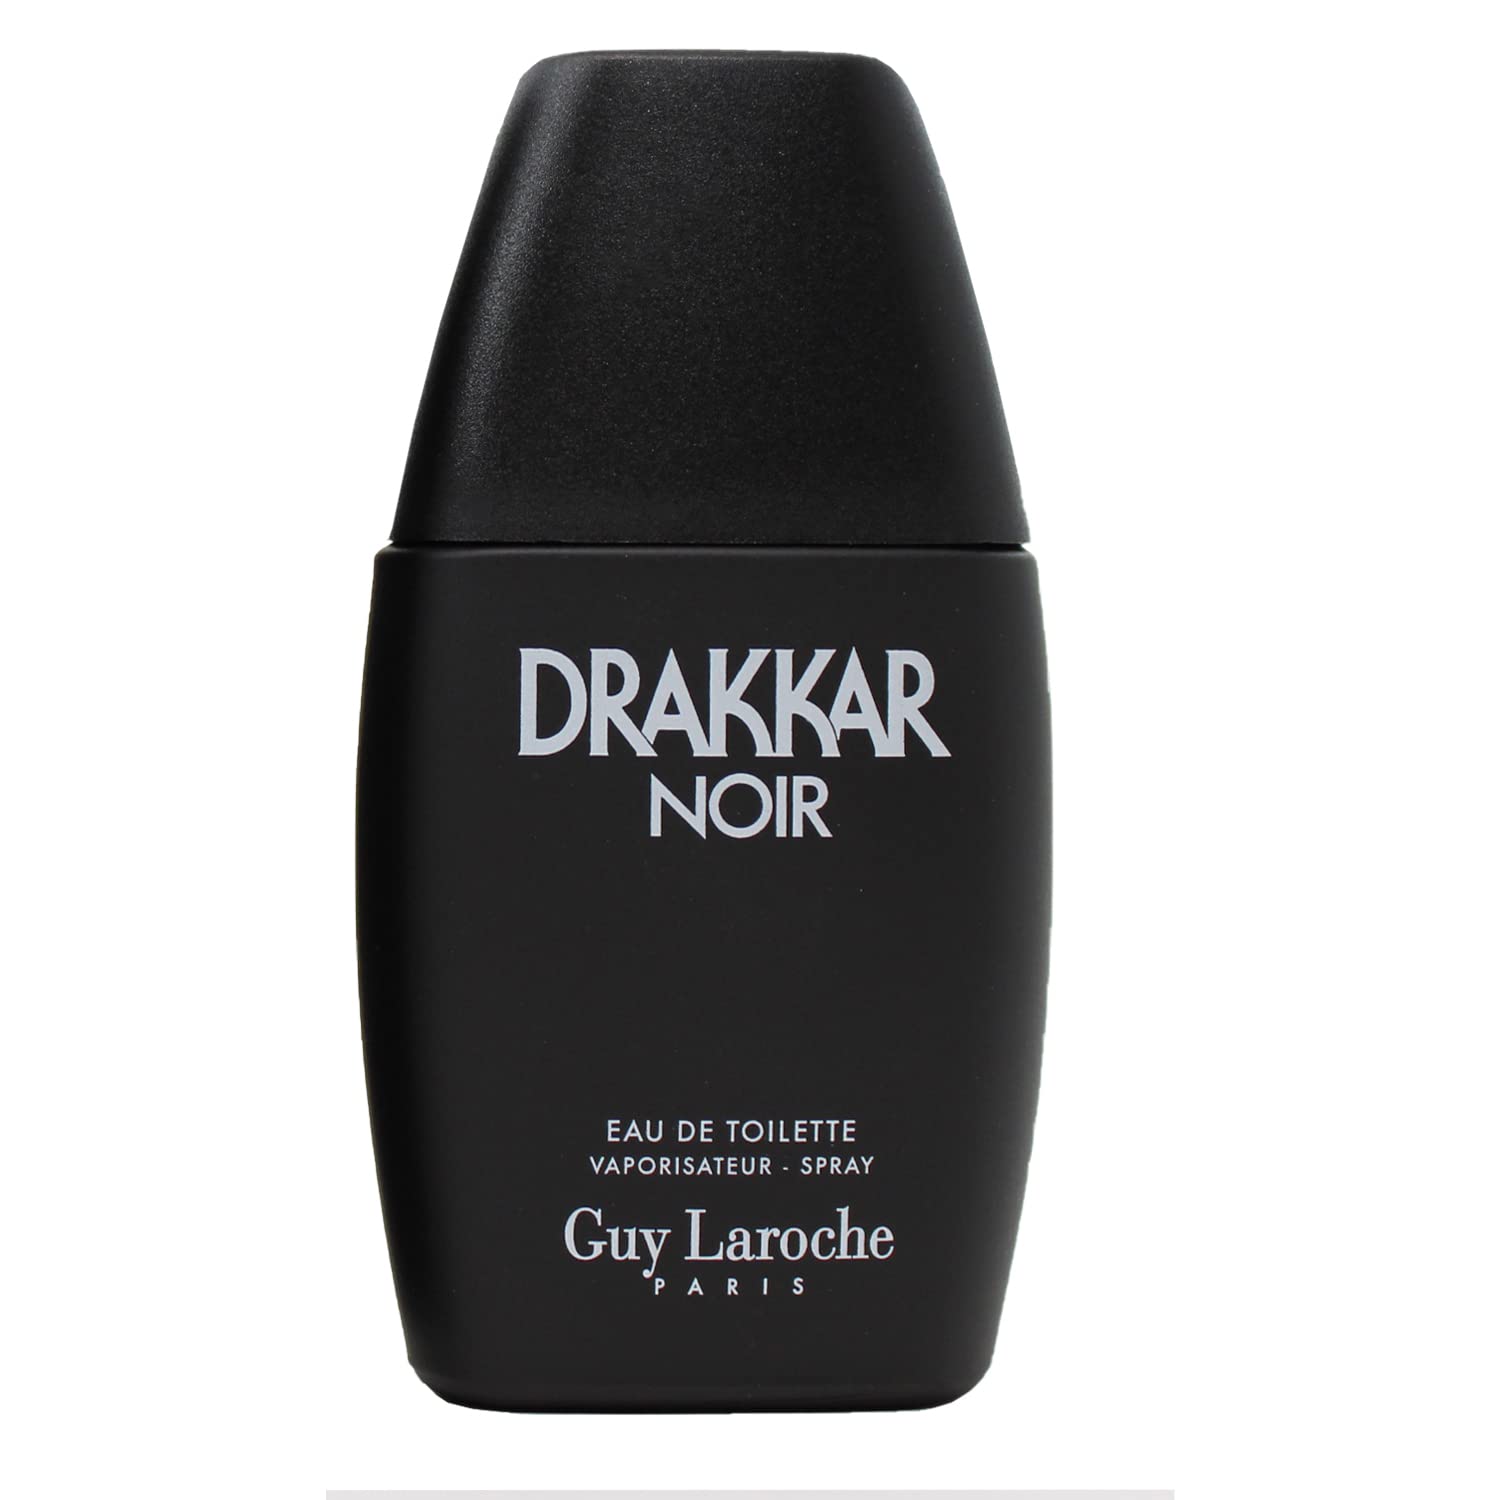 DRAKKAR NOIR by Guy Laroche 1.0 oz EDT Spray NEW in Box for Men